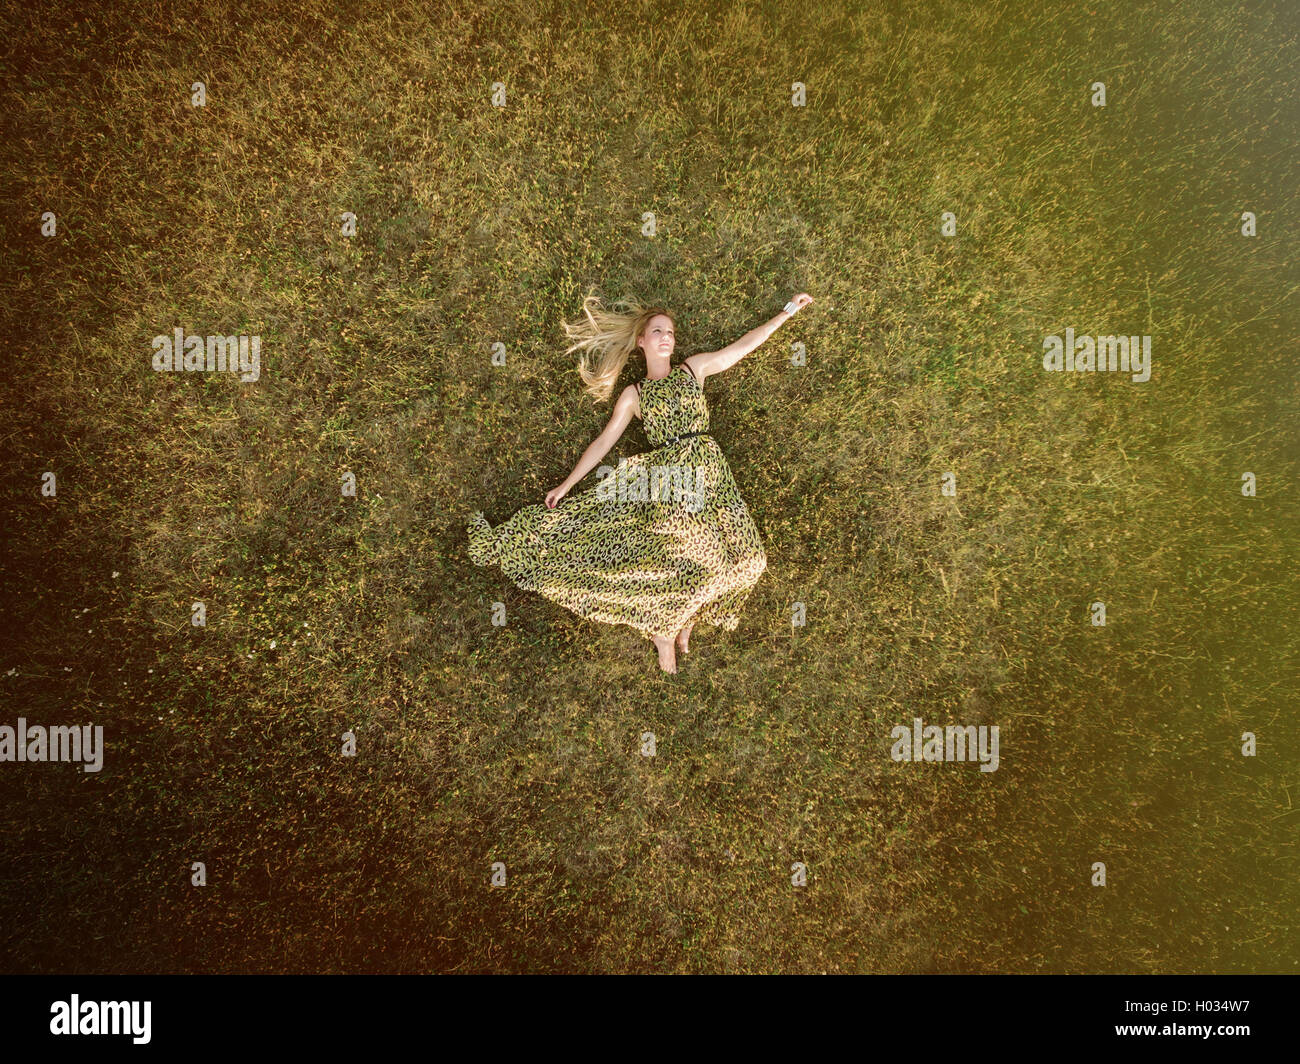 Luftaufnahme der junge Frau in einem grünen Kleid legen Sie sich auf eine Wiese. Post mit Vintage-Filter verarbeitet. Stockfoto